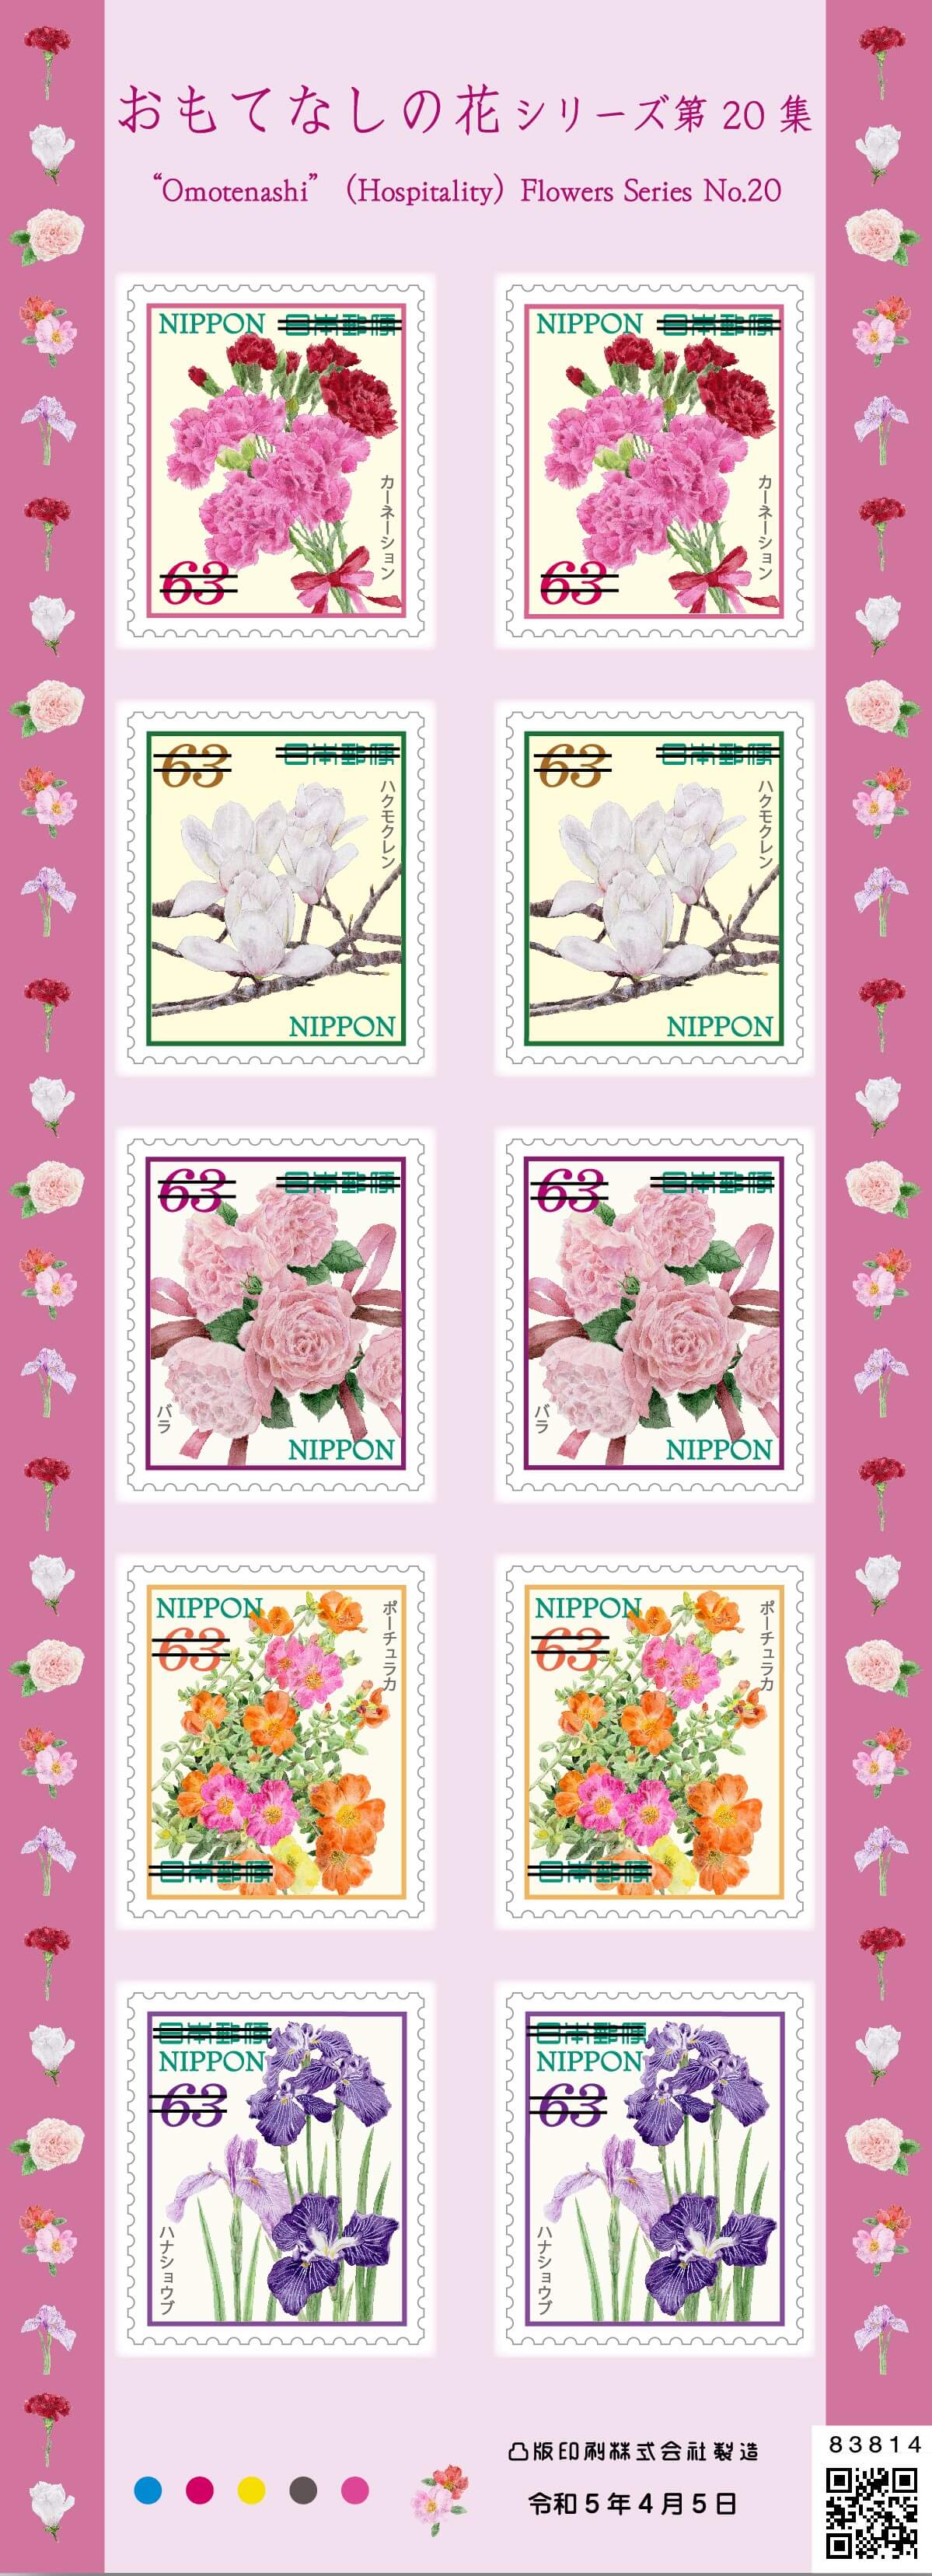 おもてなしの花シリーズ 第20集 | 日本郵便株式会社